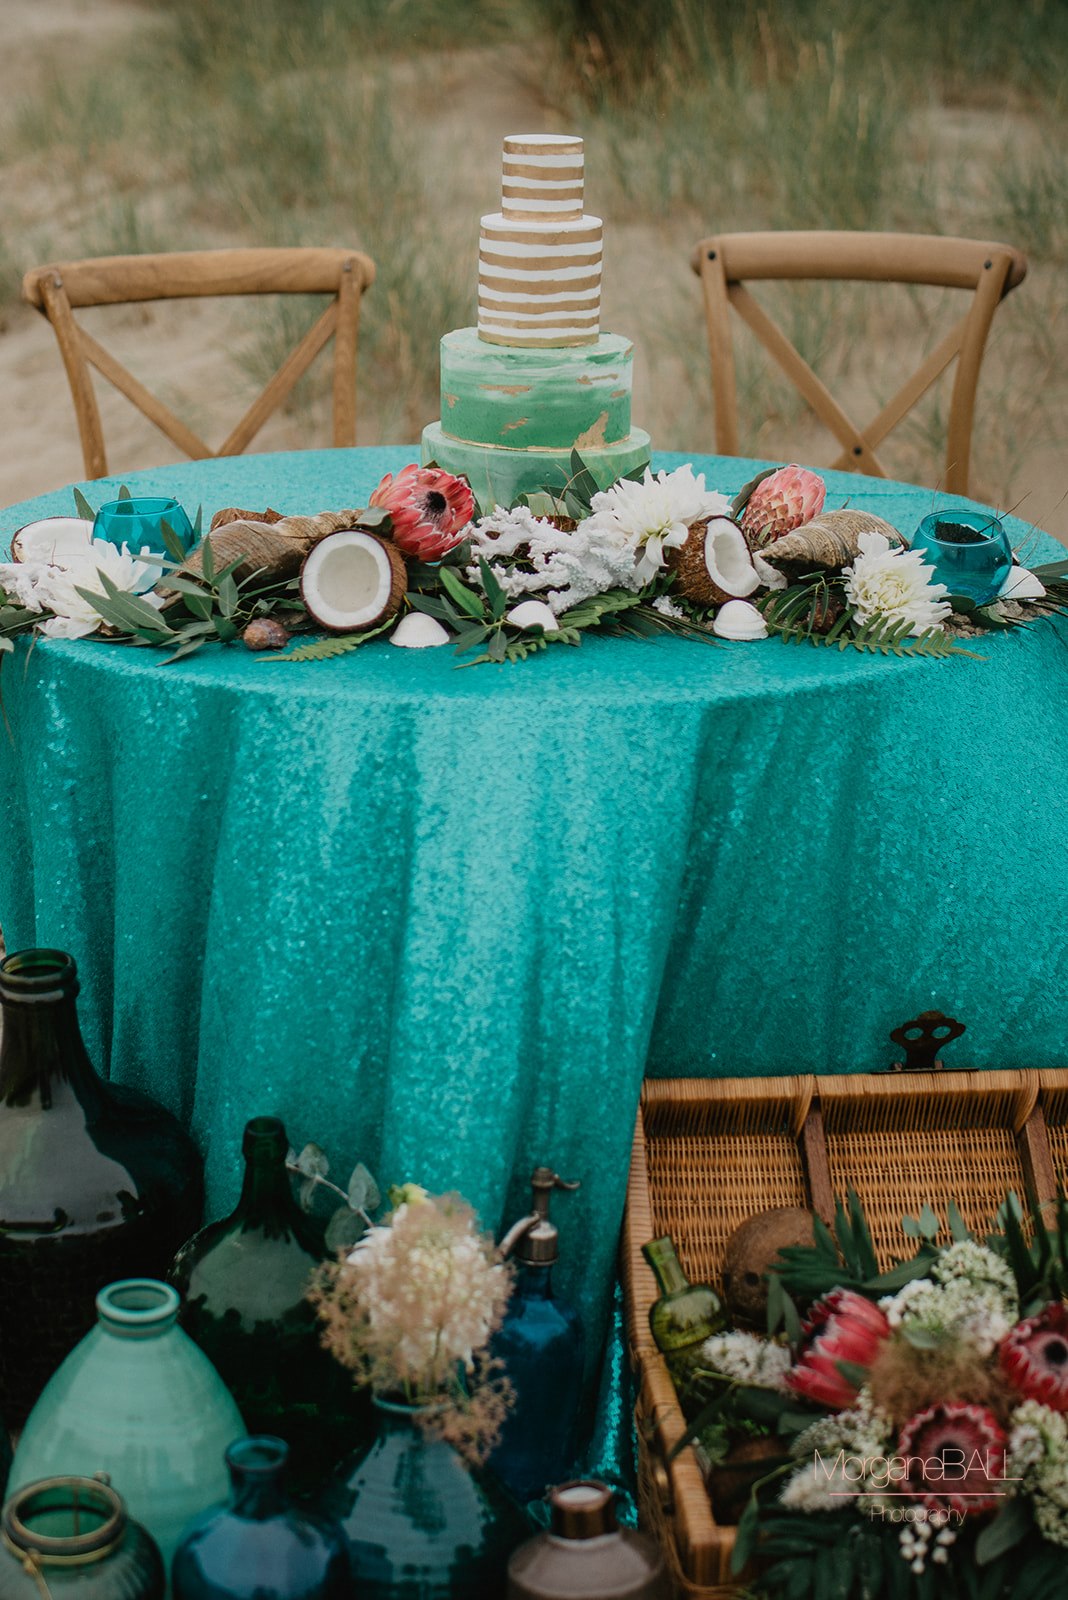 Ma déco aux petits oignons - Shooting d'inspiration tropical - table et wedding cake